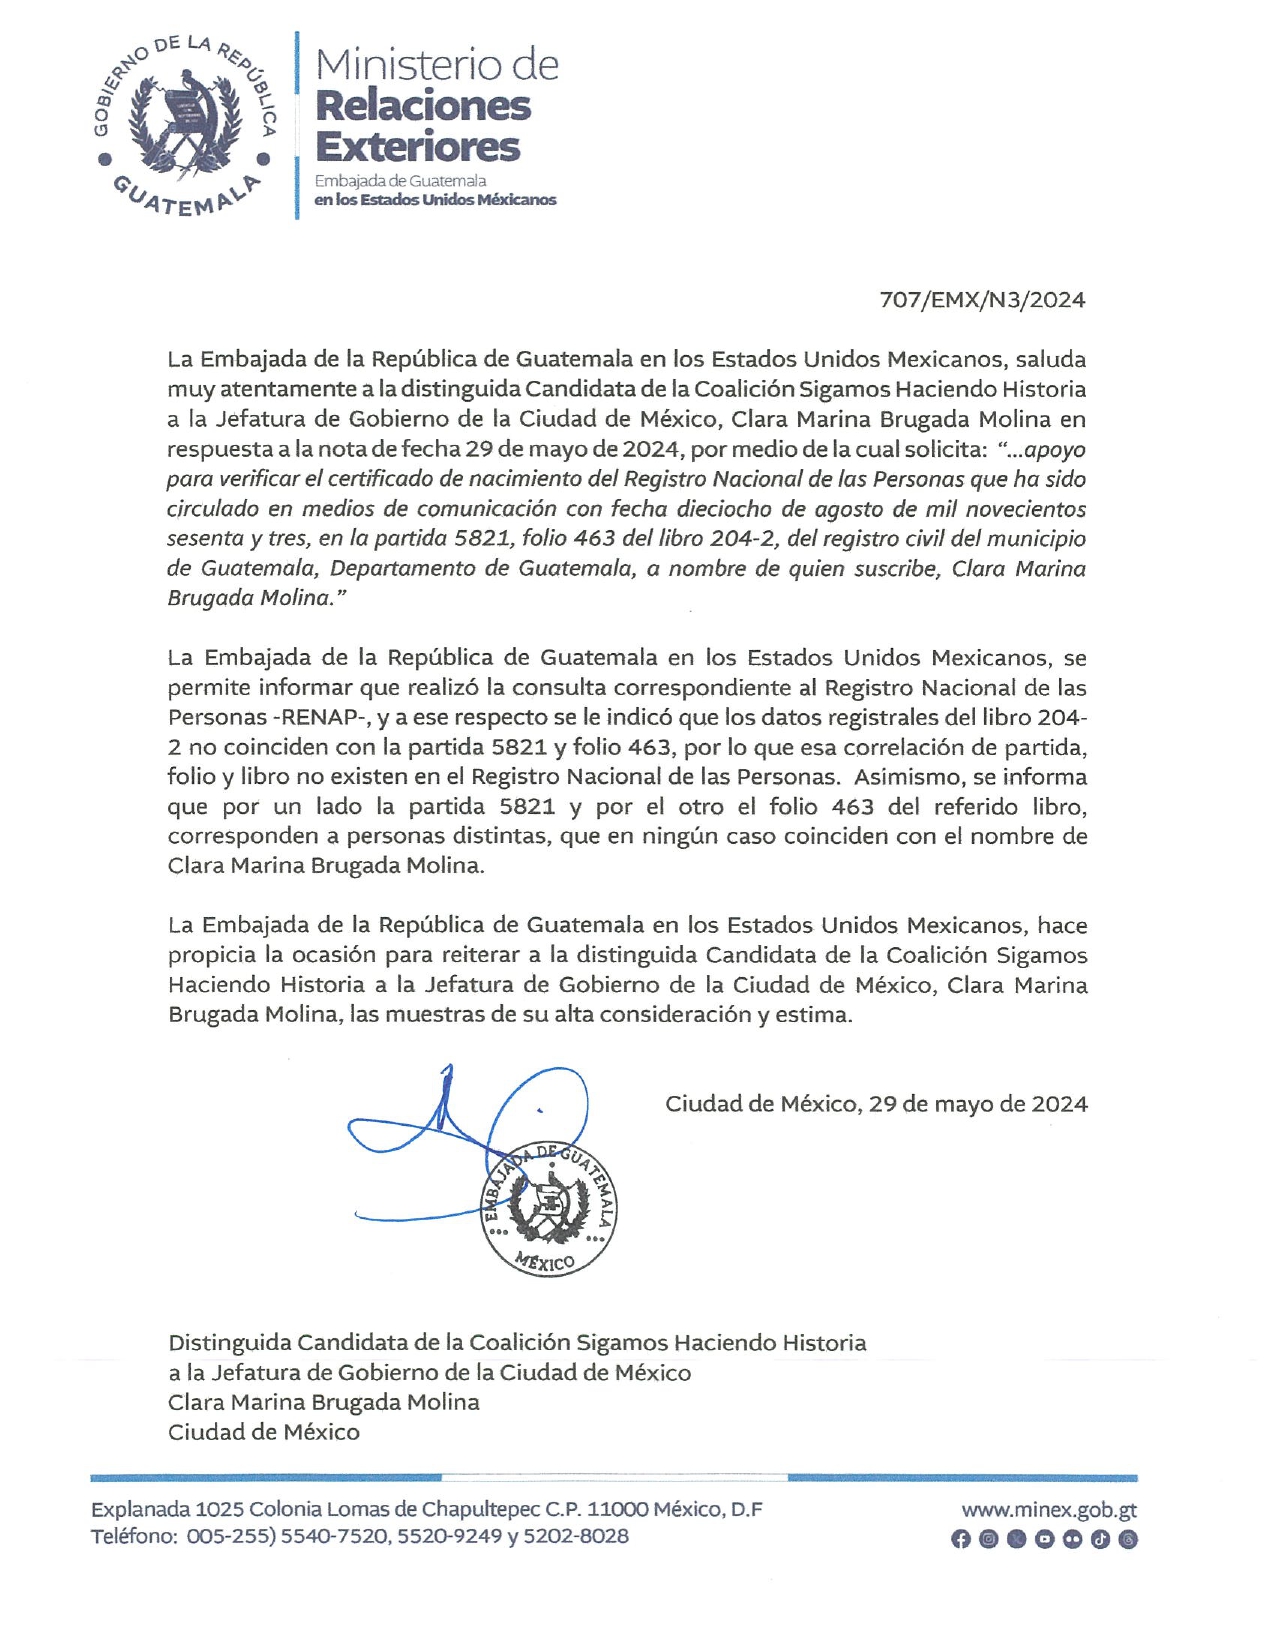 Este miércoles, Brugada hizo pública una carta de la Embajada de Guatemala en México en que dice que la partida y el folio del acta hecha pública por los panistas no corresponde al nombre de ella. 